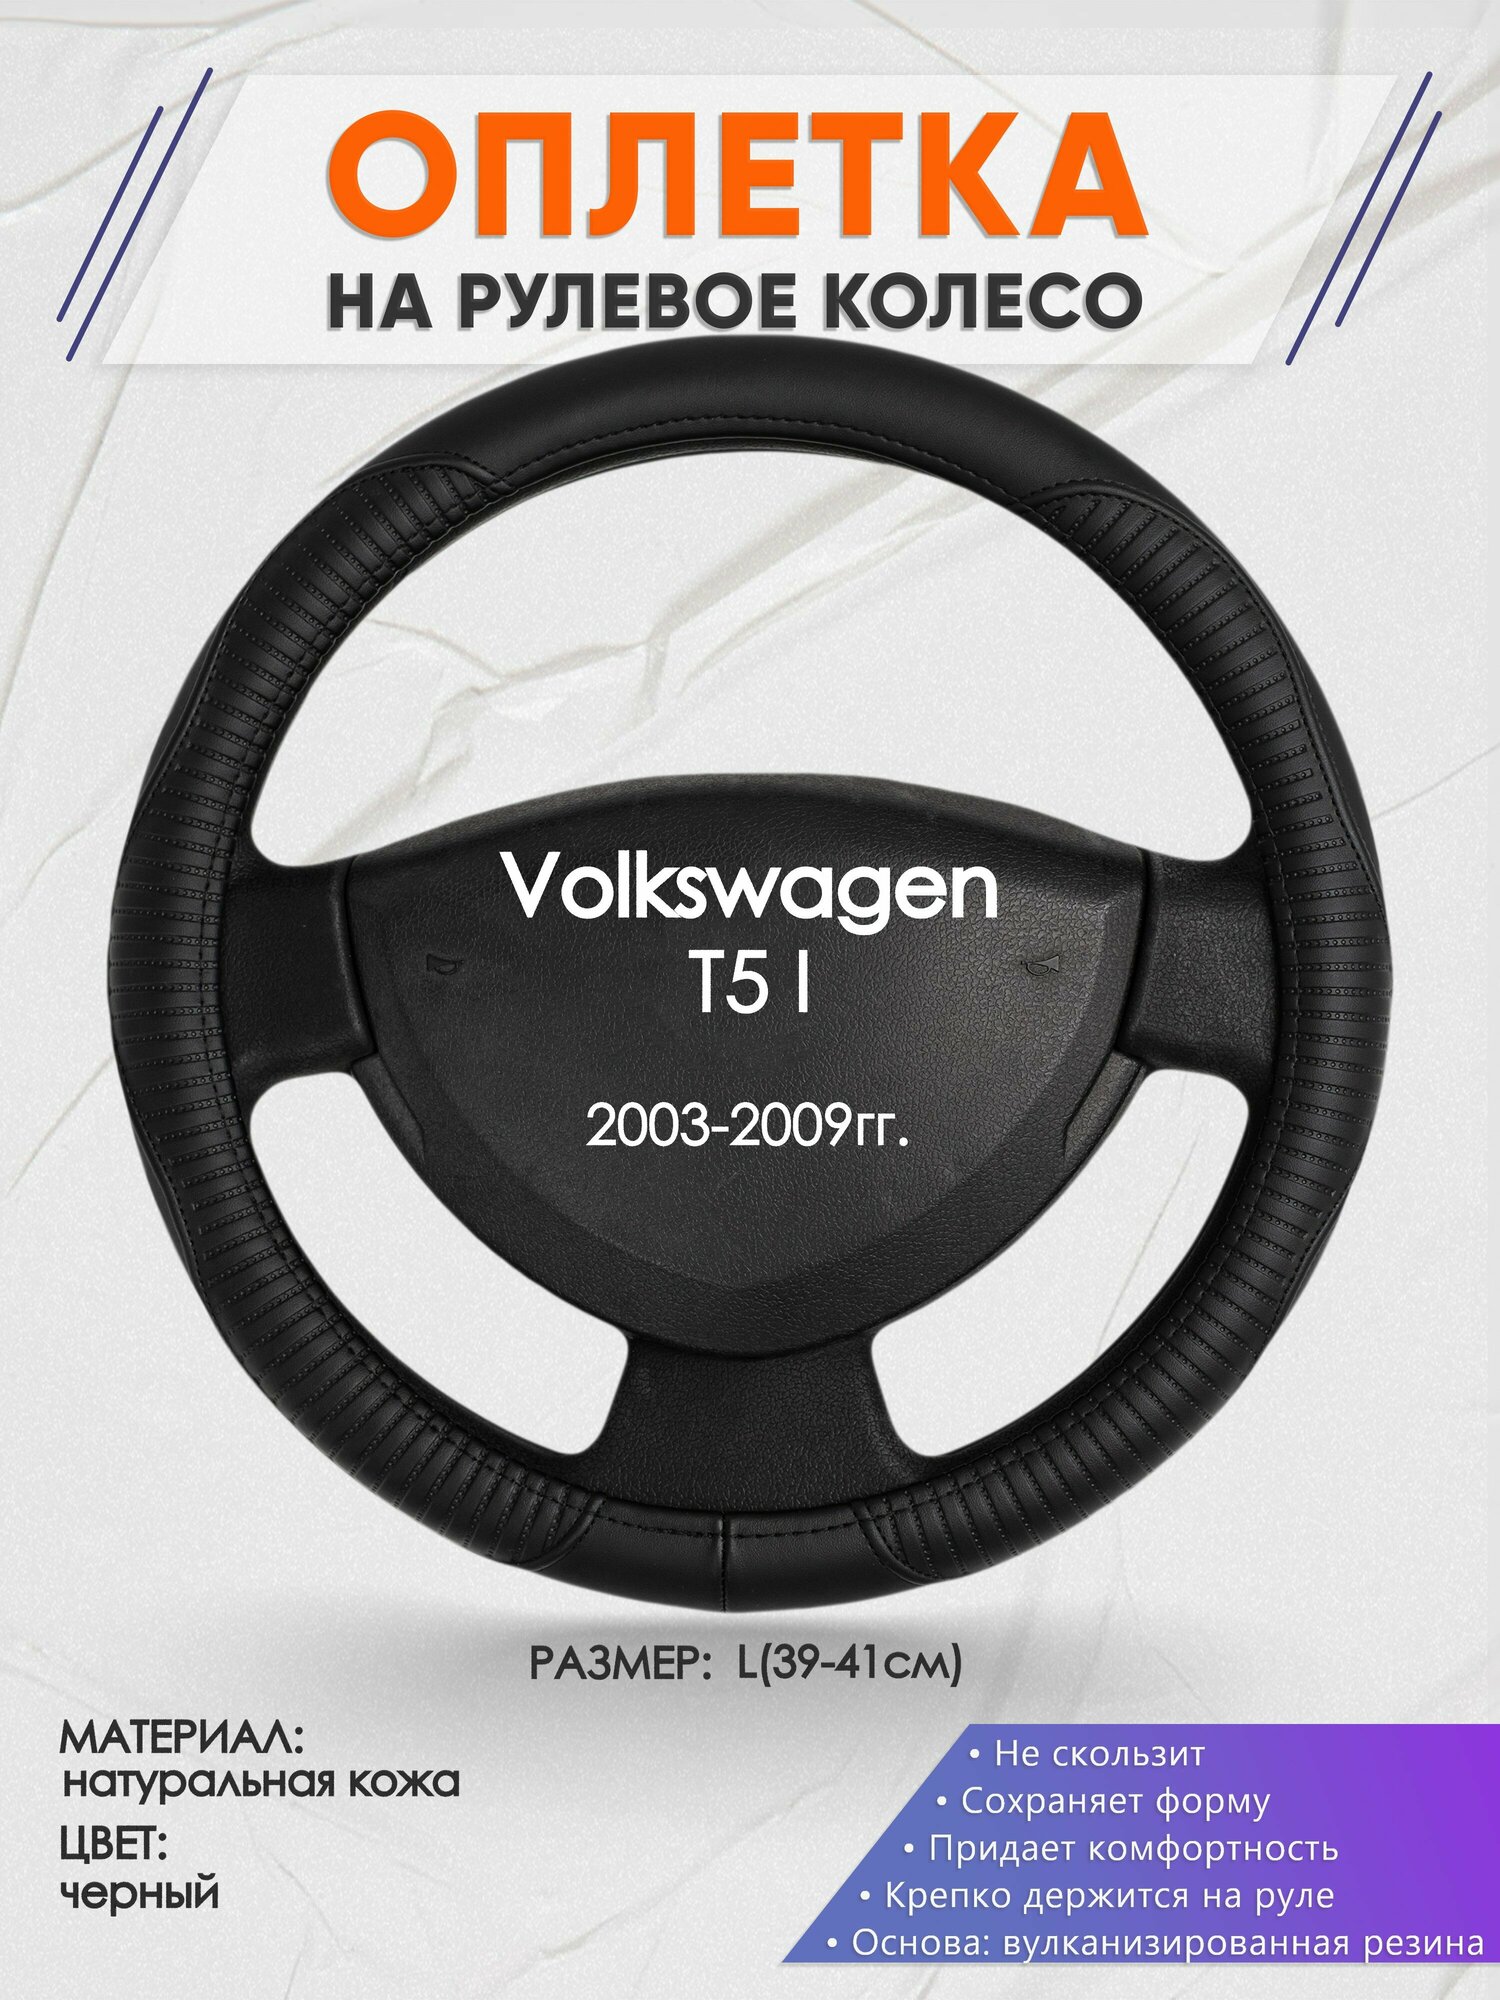 Оплетка на руль для Volkswagen T5 I(Фольксваген т5) 2003-2009, L(39-41см), Натуральная кожа 22